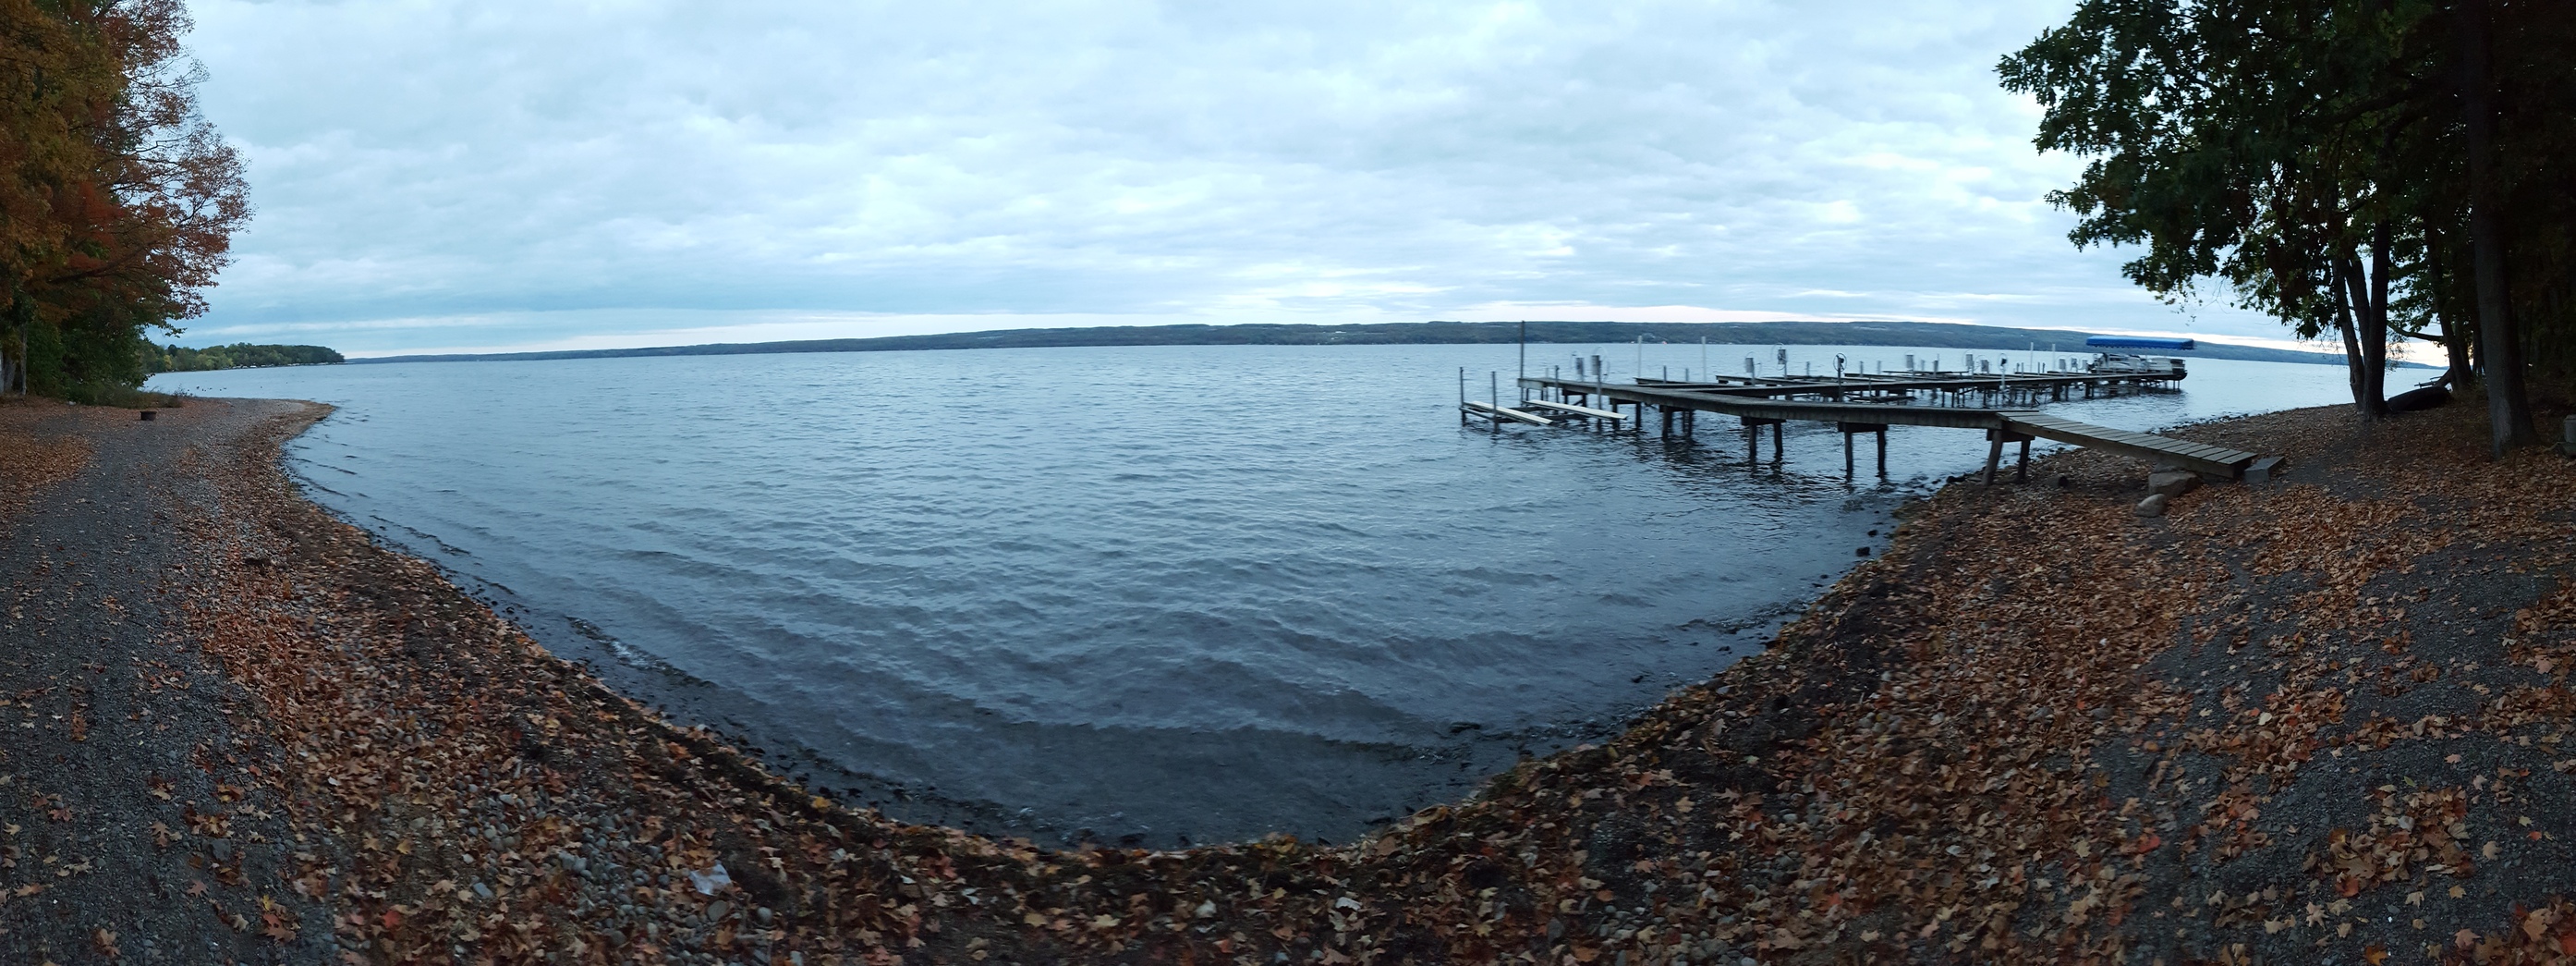 Seneca Lake on an overcast day